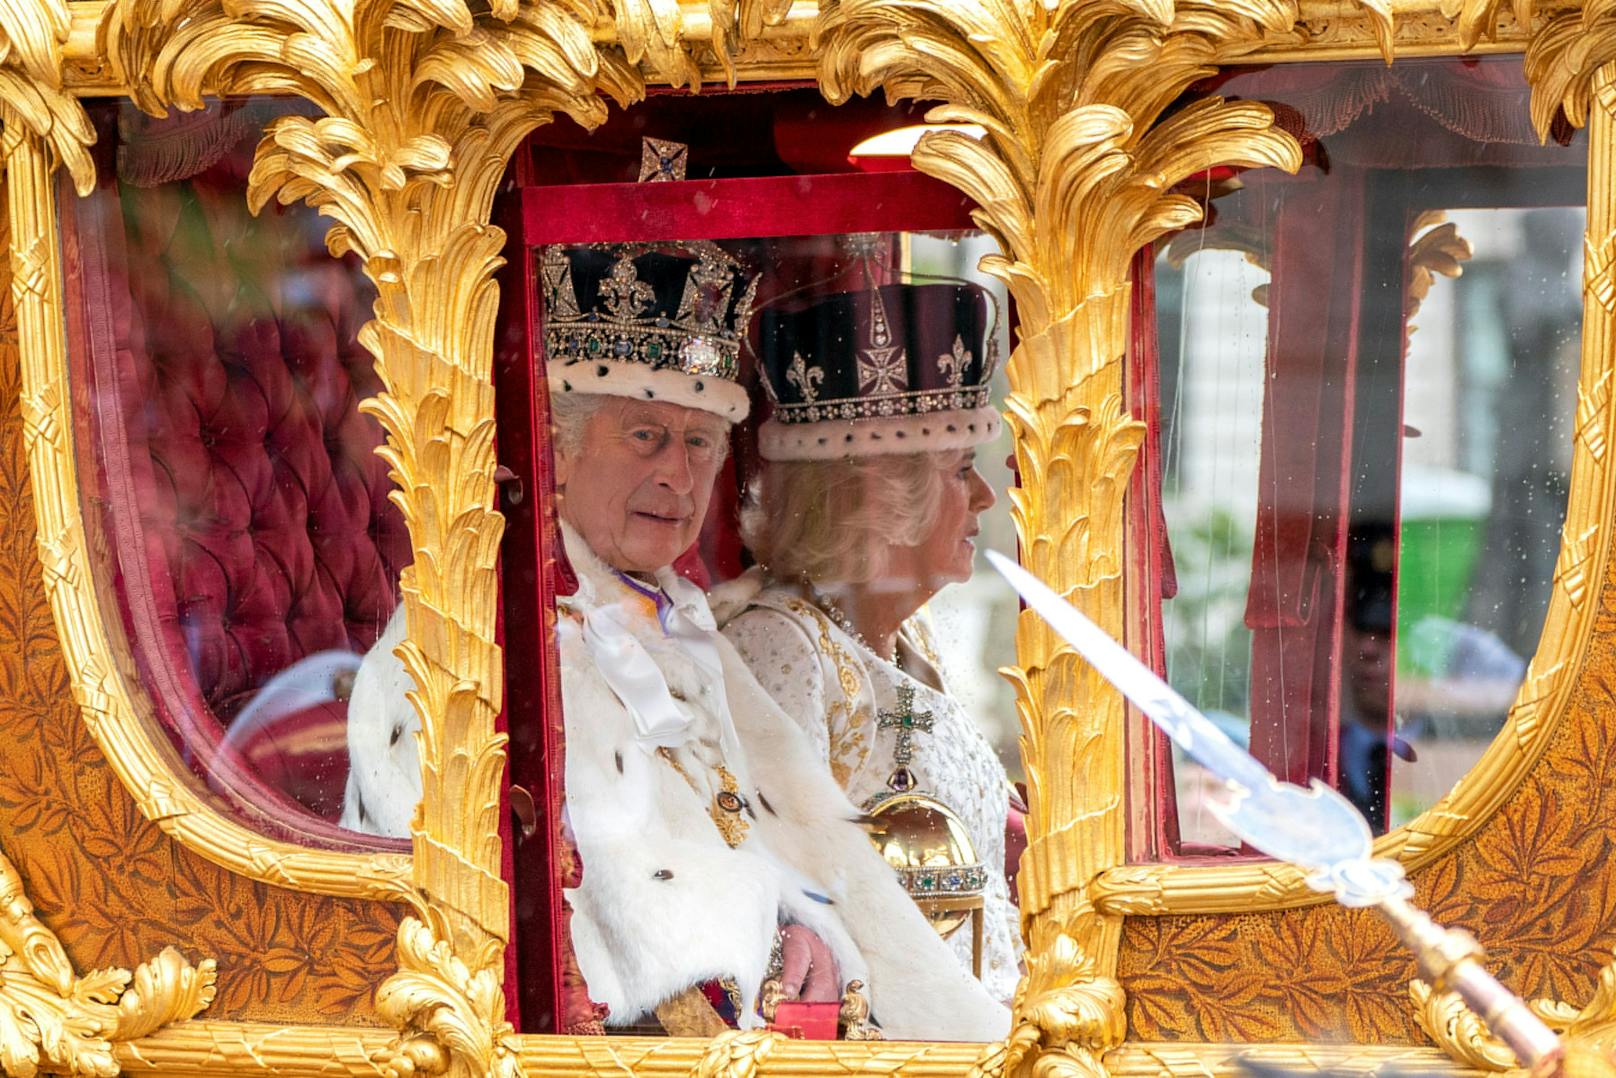 König Charles war nicht ganz glücklich während der Zeremonie.